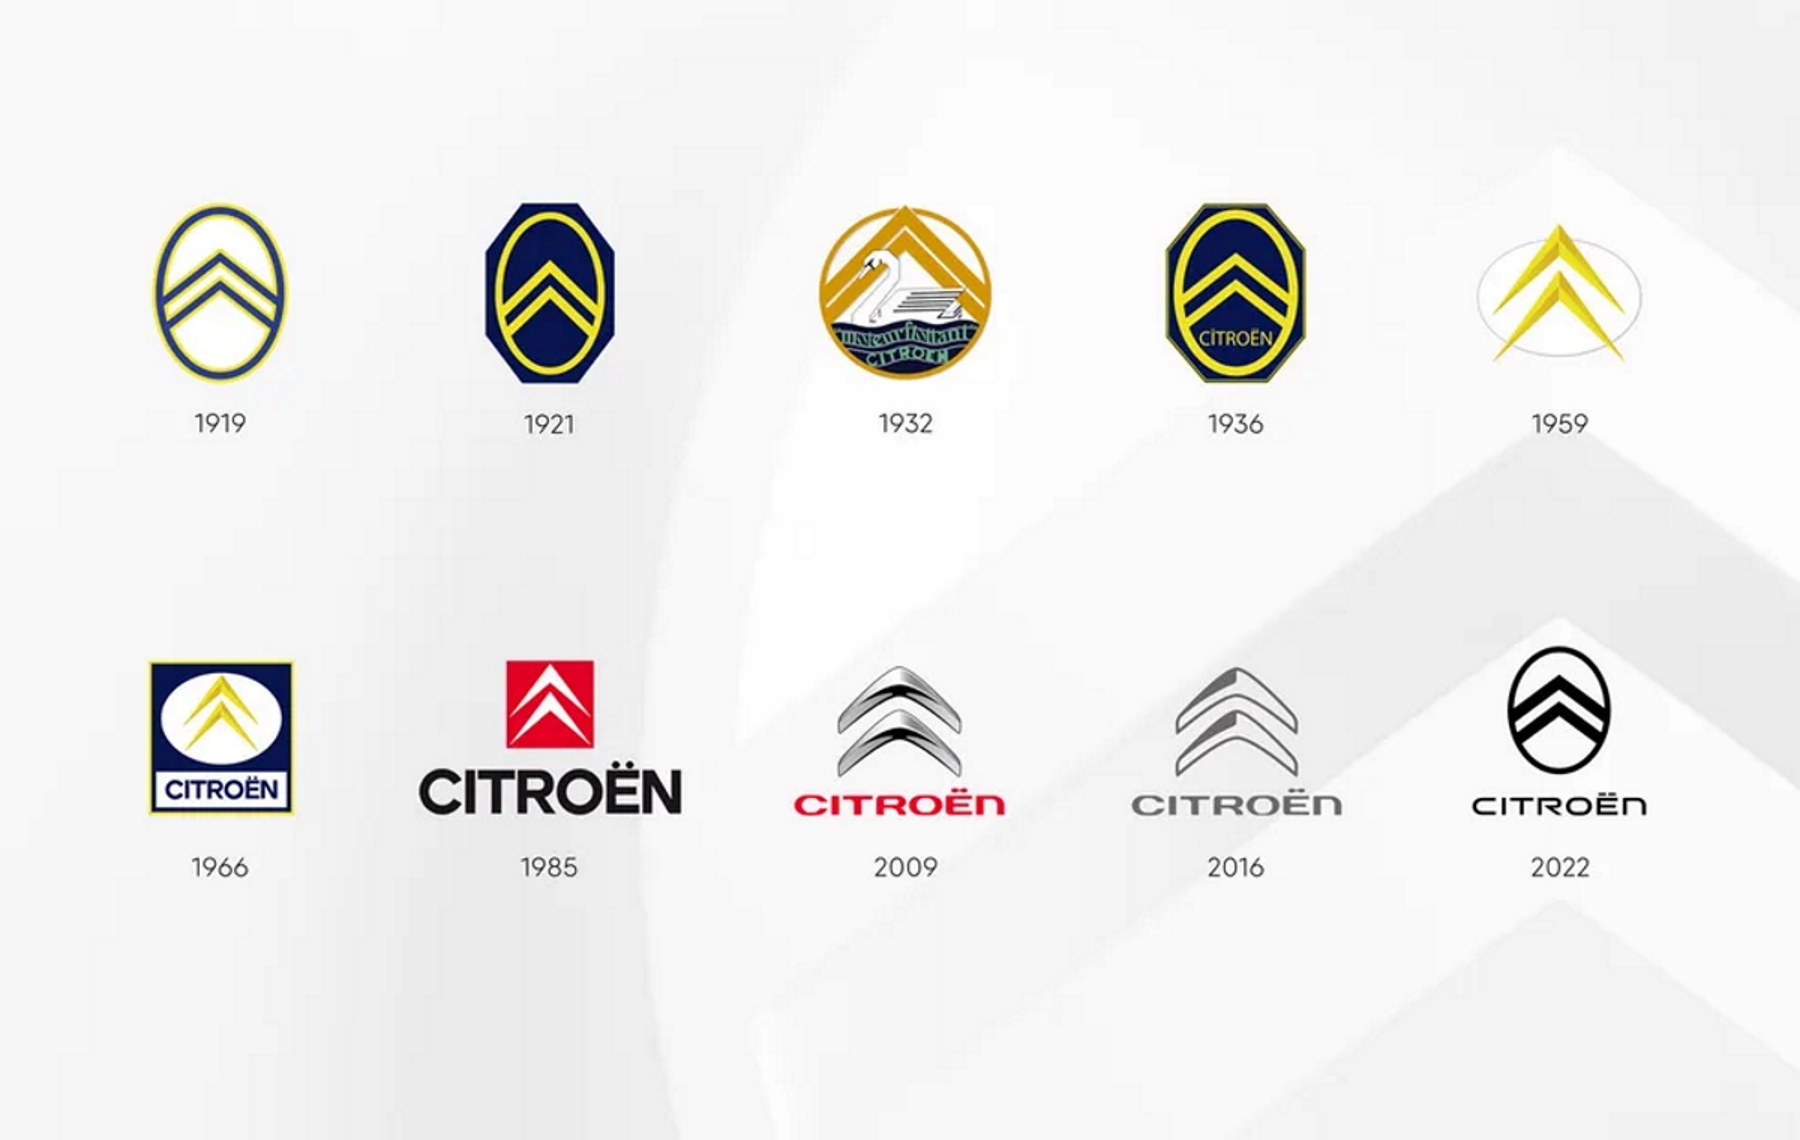 Imagem com os vários logotipos da Citroën e seus respectivos anos de aplicação em baixo de cada um deles. 